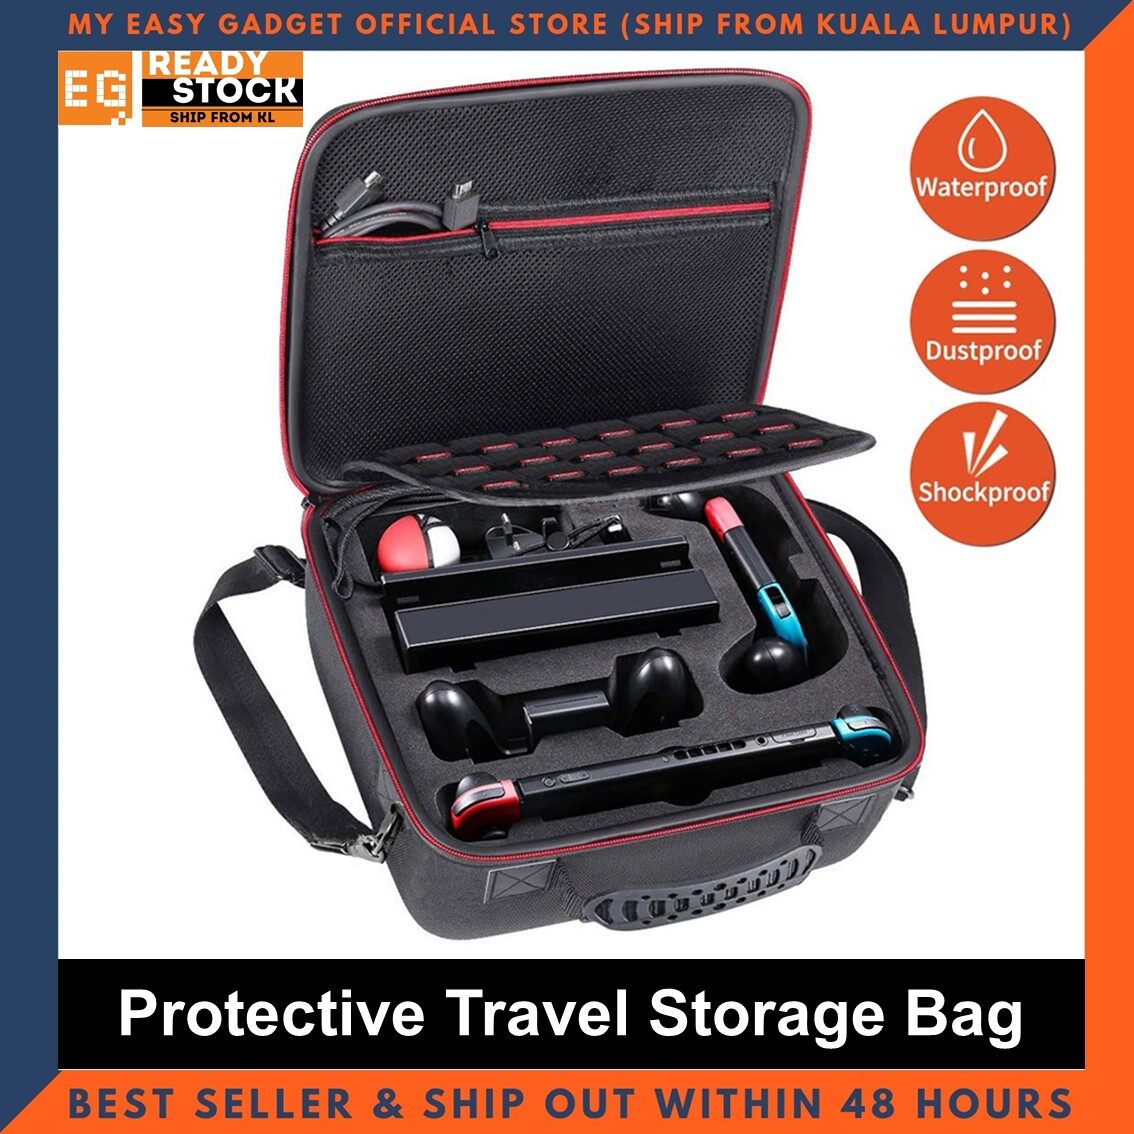 Nintendo Switch OLED / Switch V2 Hard Shell Carrying Case EVA Protective Travel Case Storage Bag Console & Docking